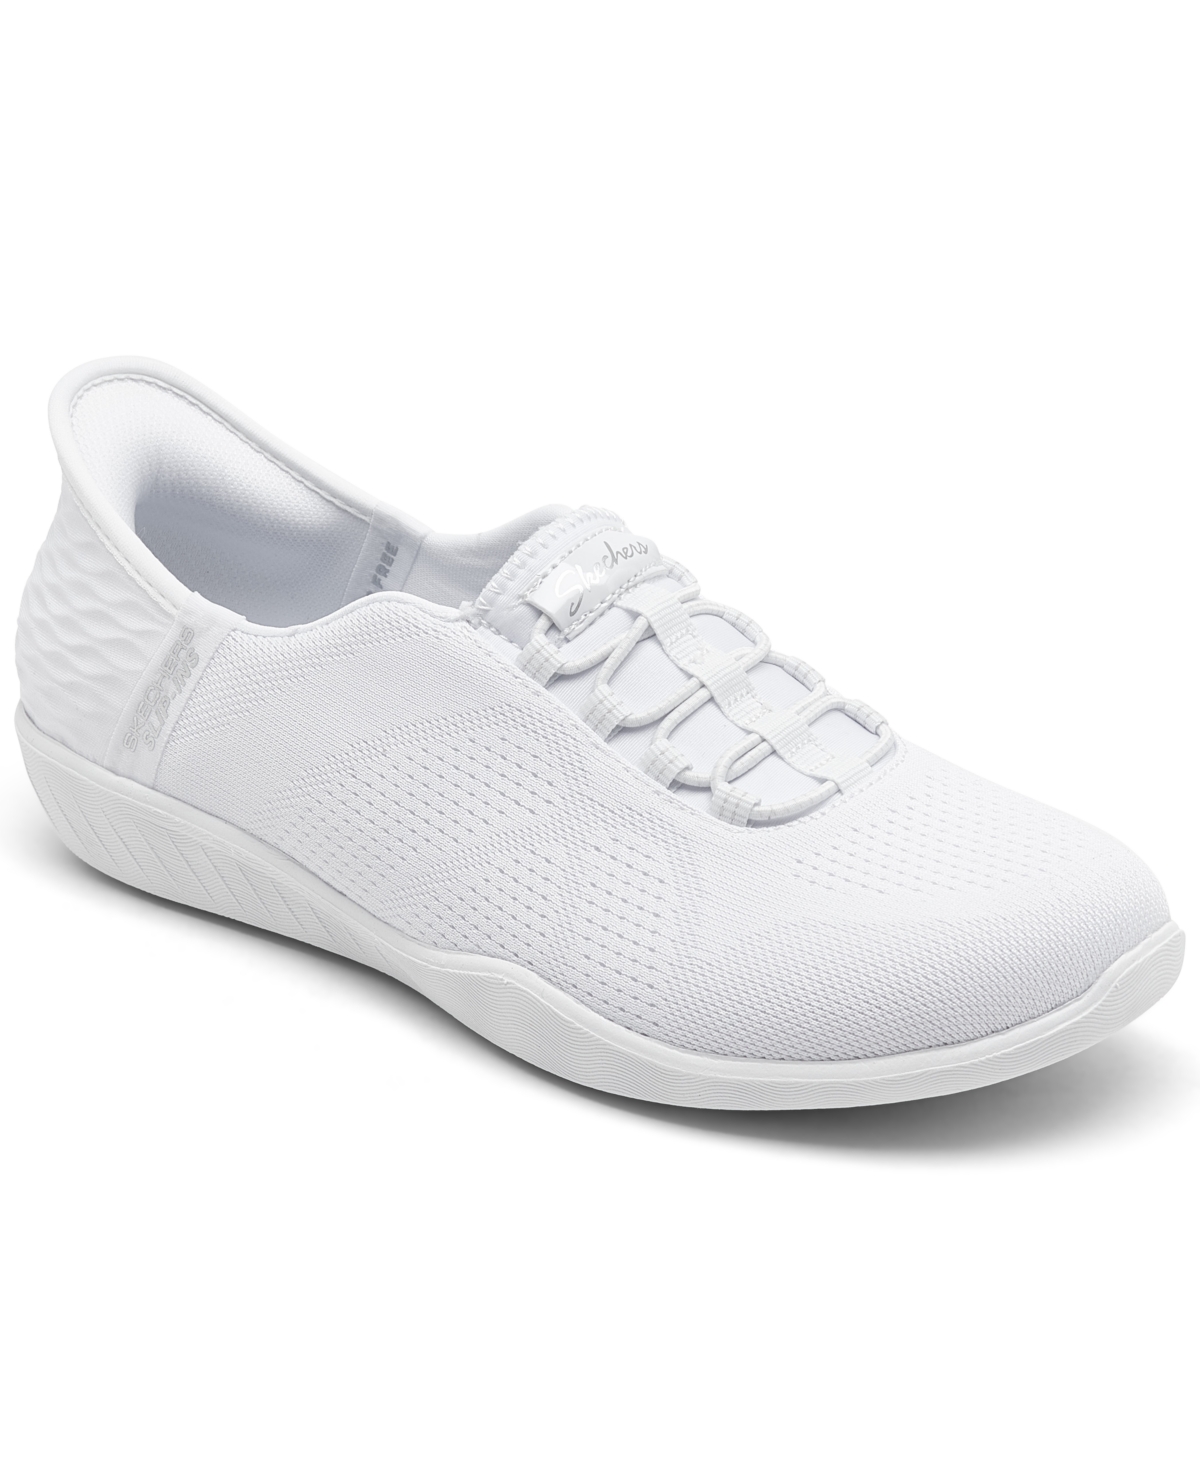 Women's Slip-Ins: Go Walk Flex - Grand Entry Slip-On Walking Sneakers - White/white